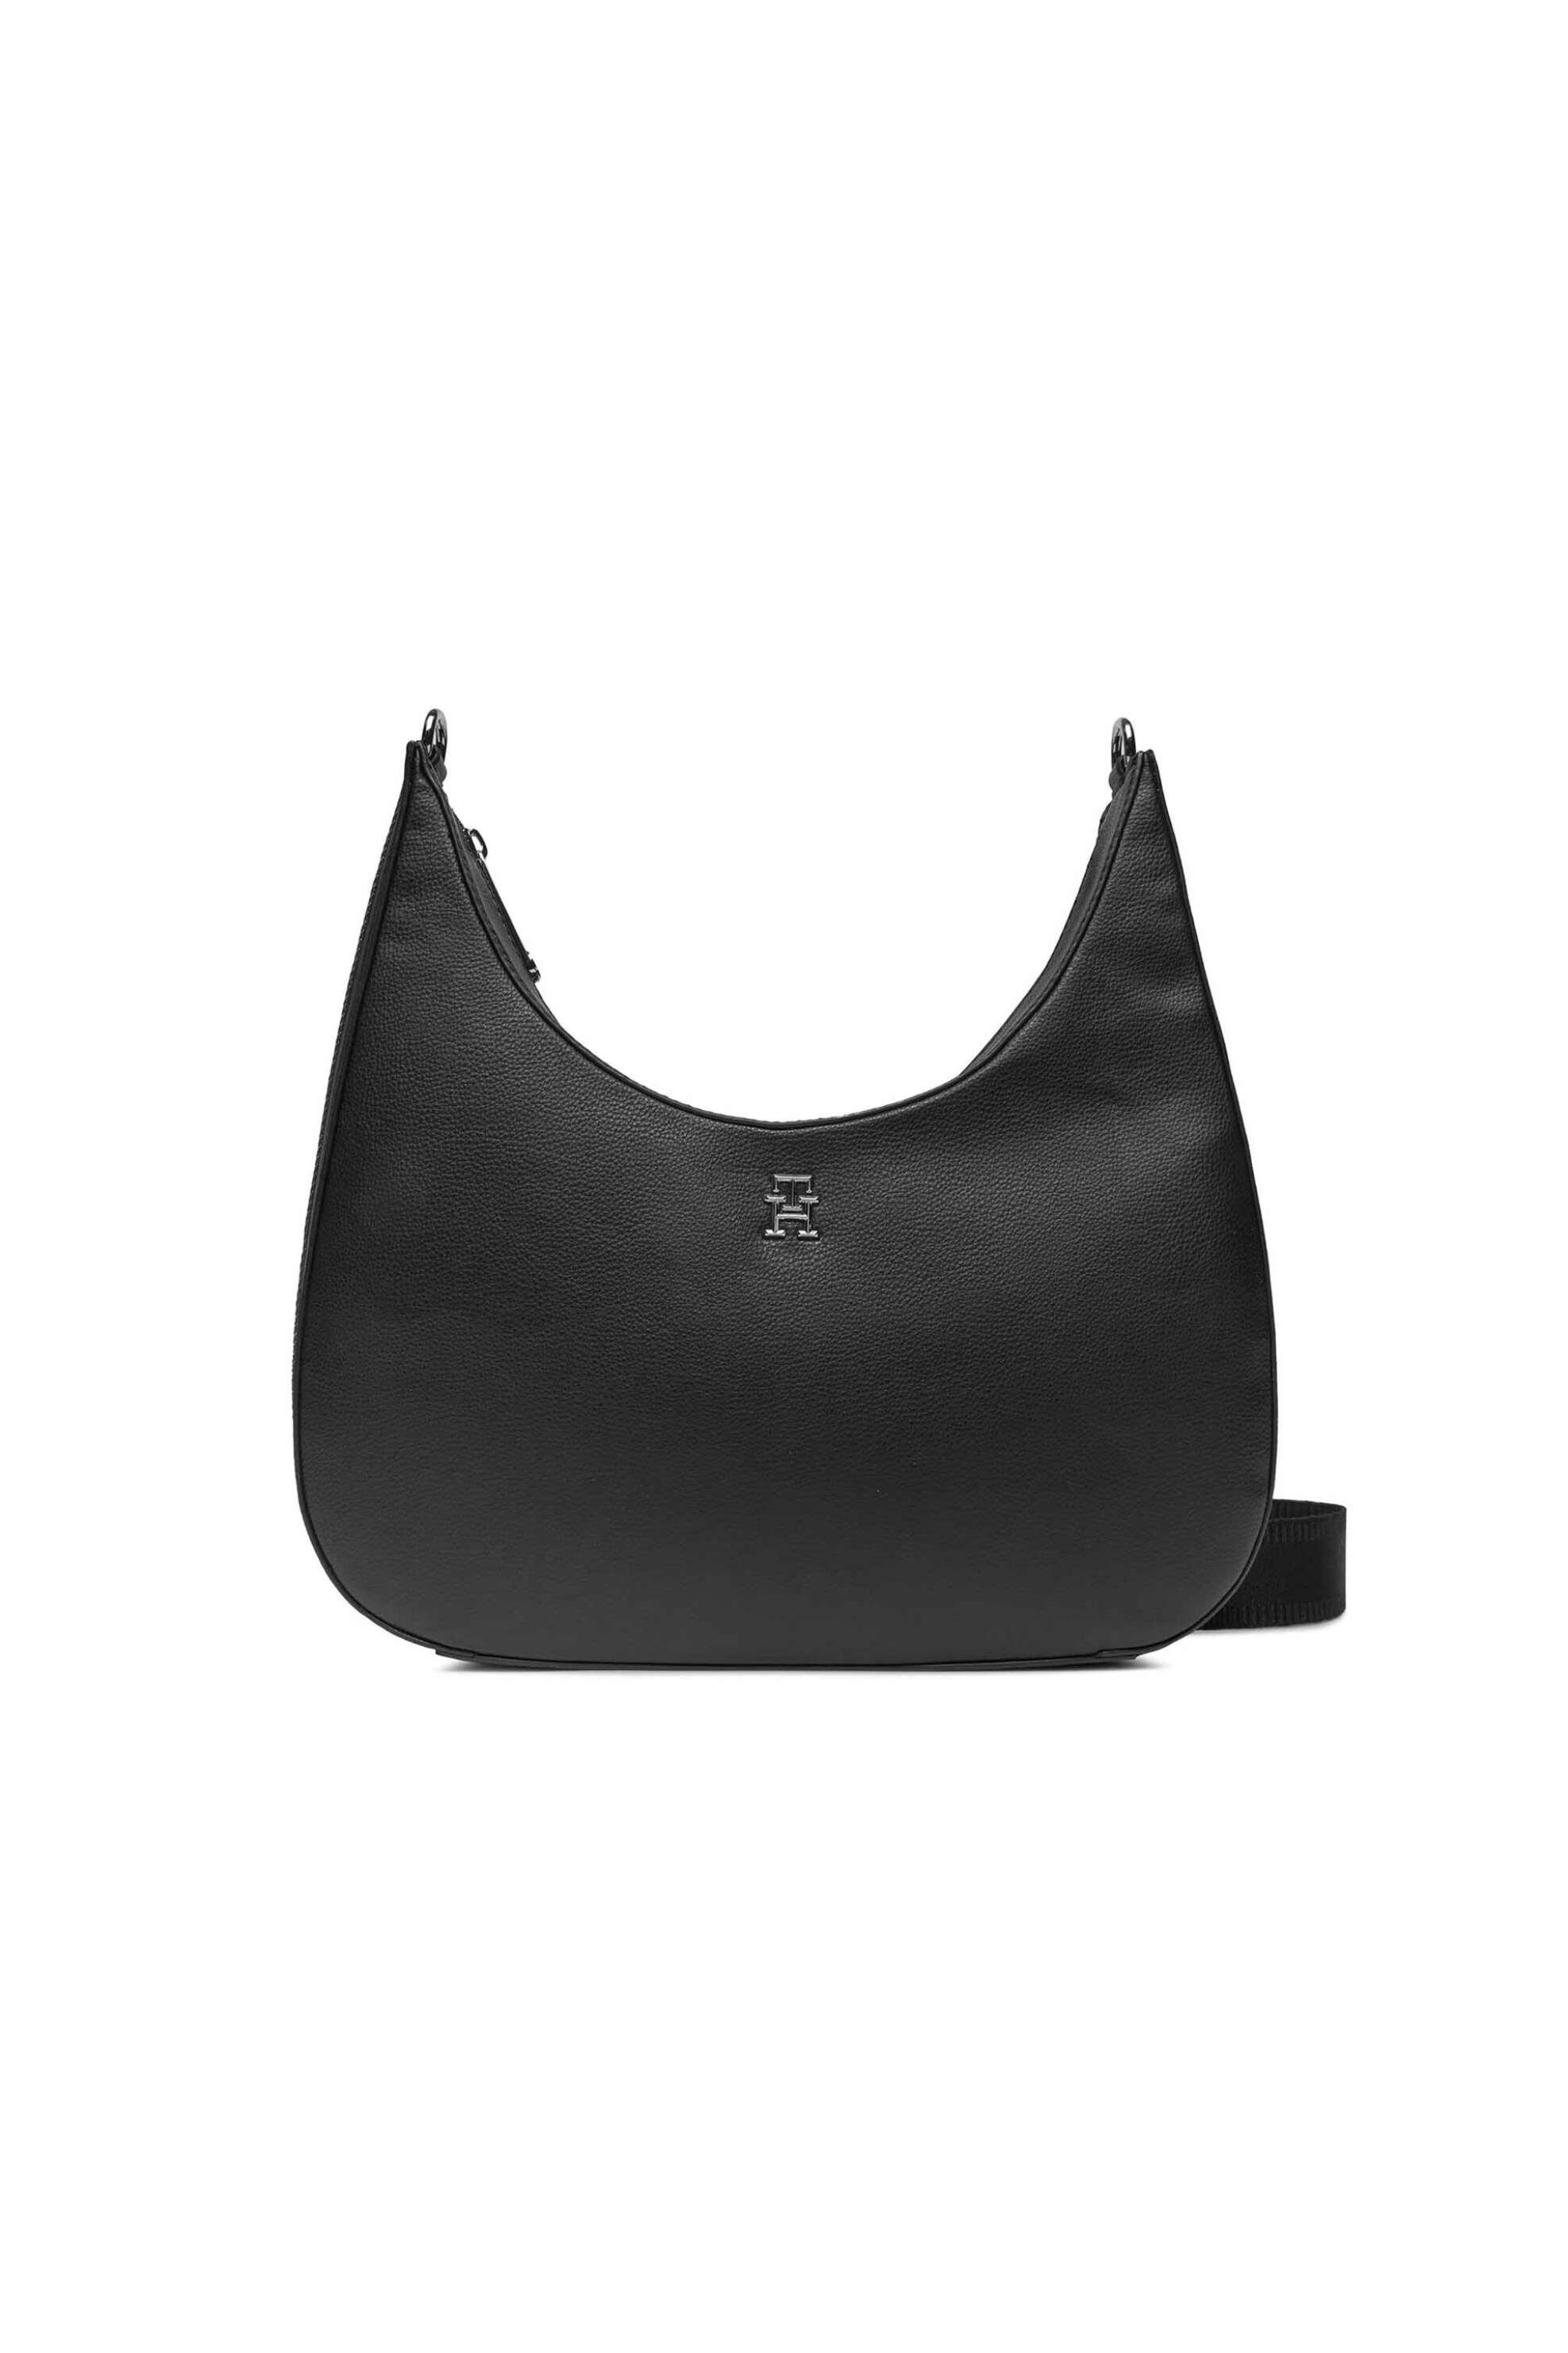 Γυναίκα > ΤΣΑΝΤΕΣ > Τσάντες Ταχυδρόμου & Cross Body Tommy Hilfiger γυναικεία τσάντα crossbody hobo faux leather με μεταλλικό monogram logo - AW0AW15723 Μαύρο